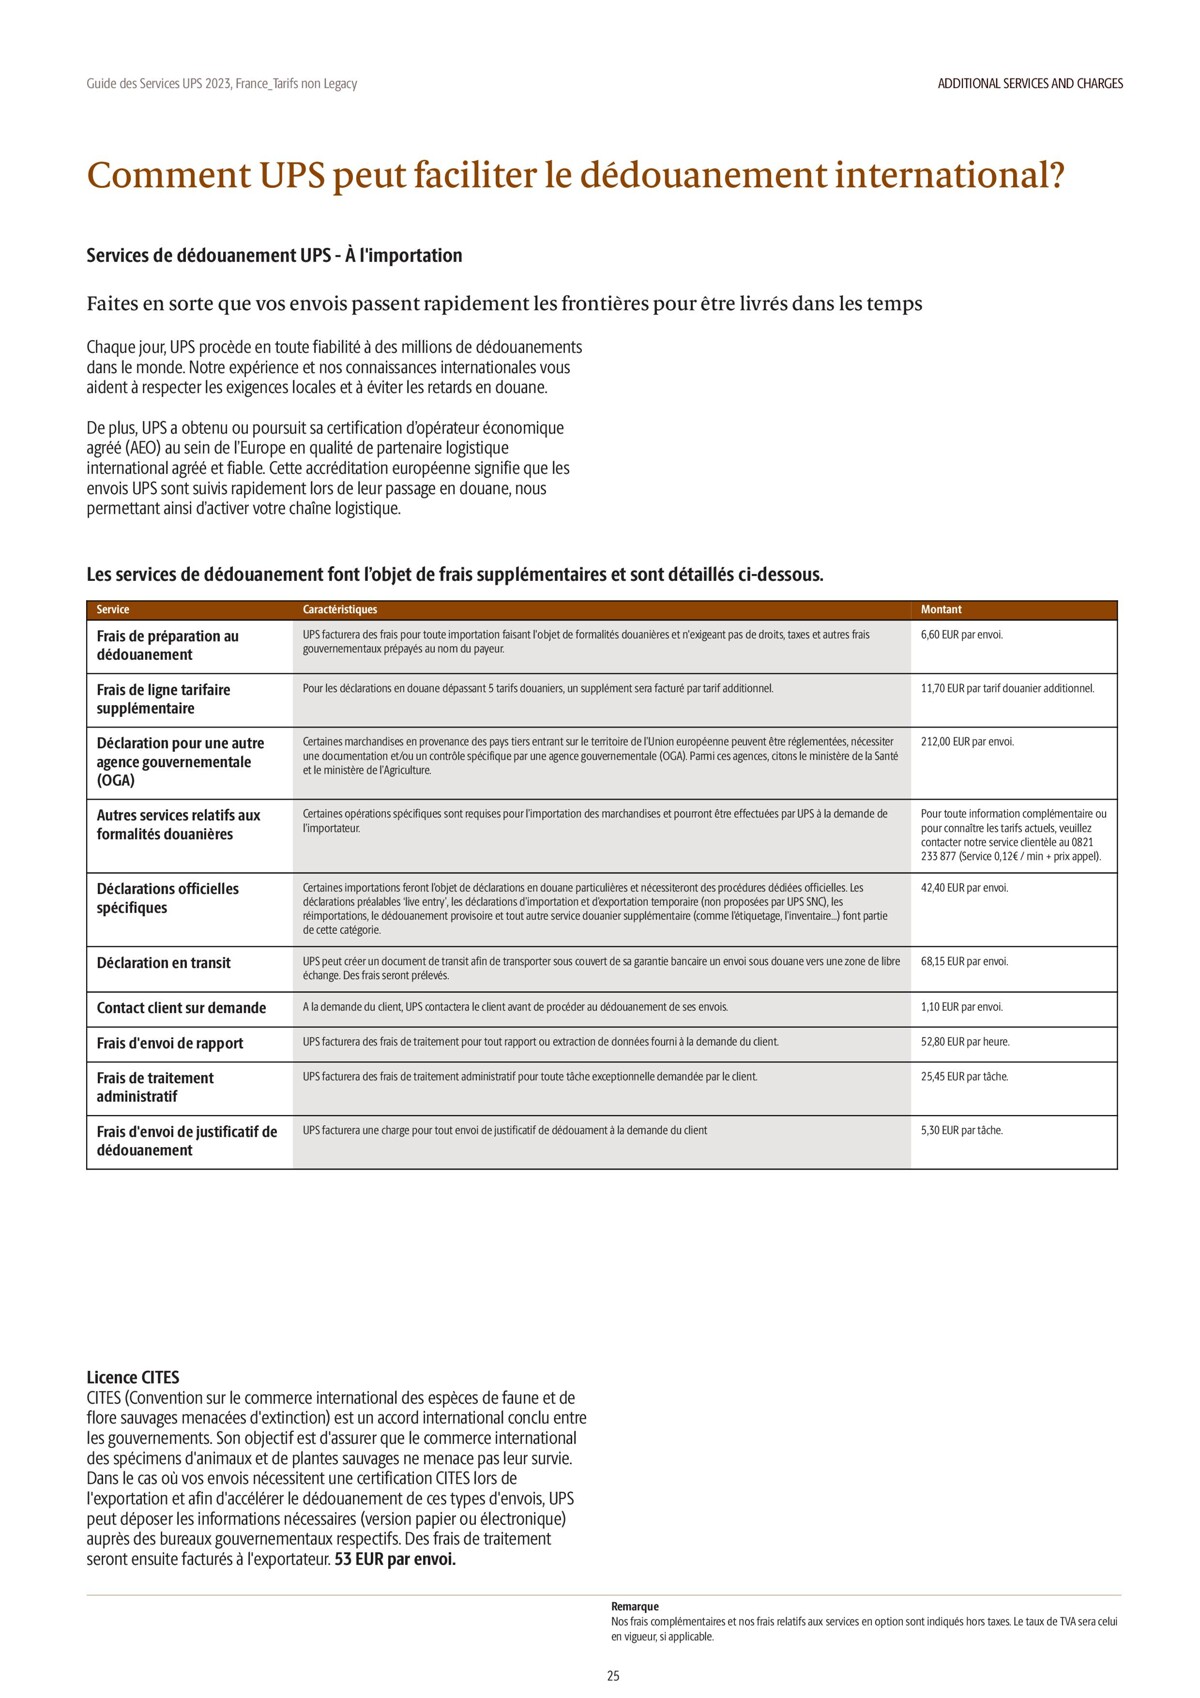 Catalogue Guide des Services 2023, page 00025